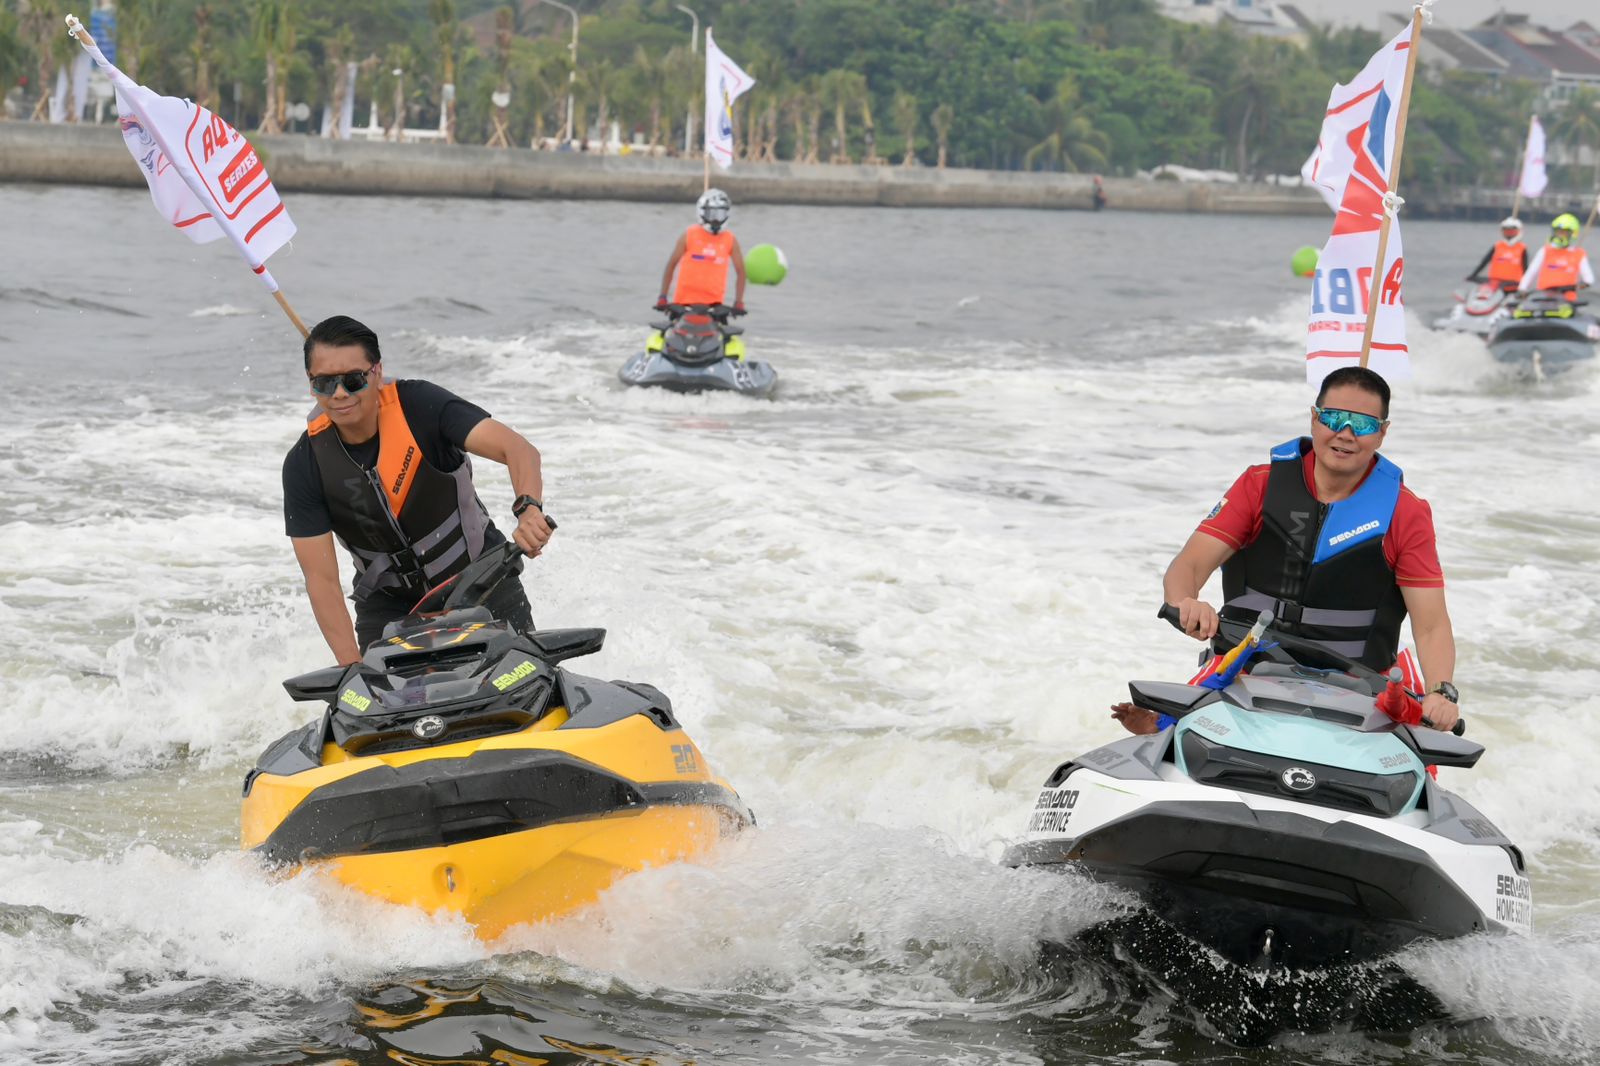 Kemenpora Harap Kejurnas Piala Menpora Aquabike Indonesia Championship Series 2 Lahirkan Atlet Berprestasi Dunia